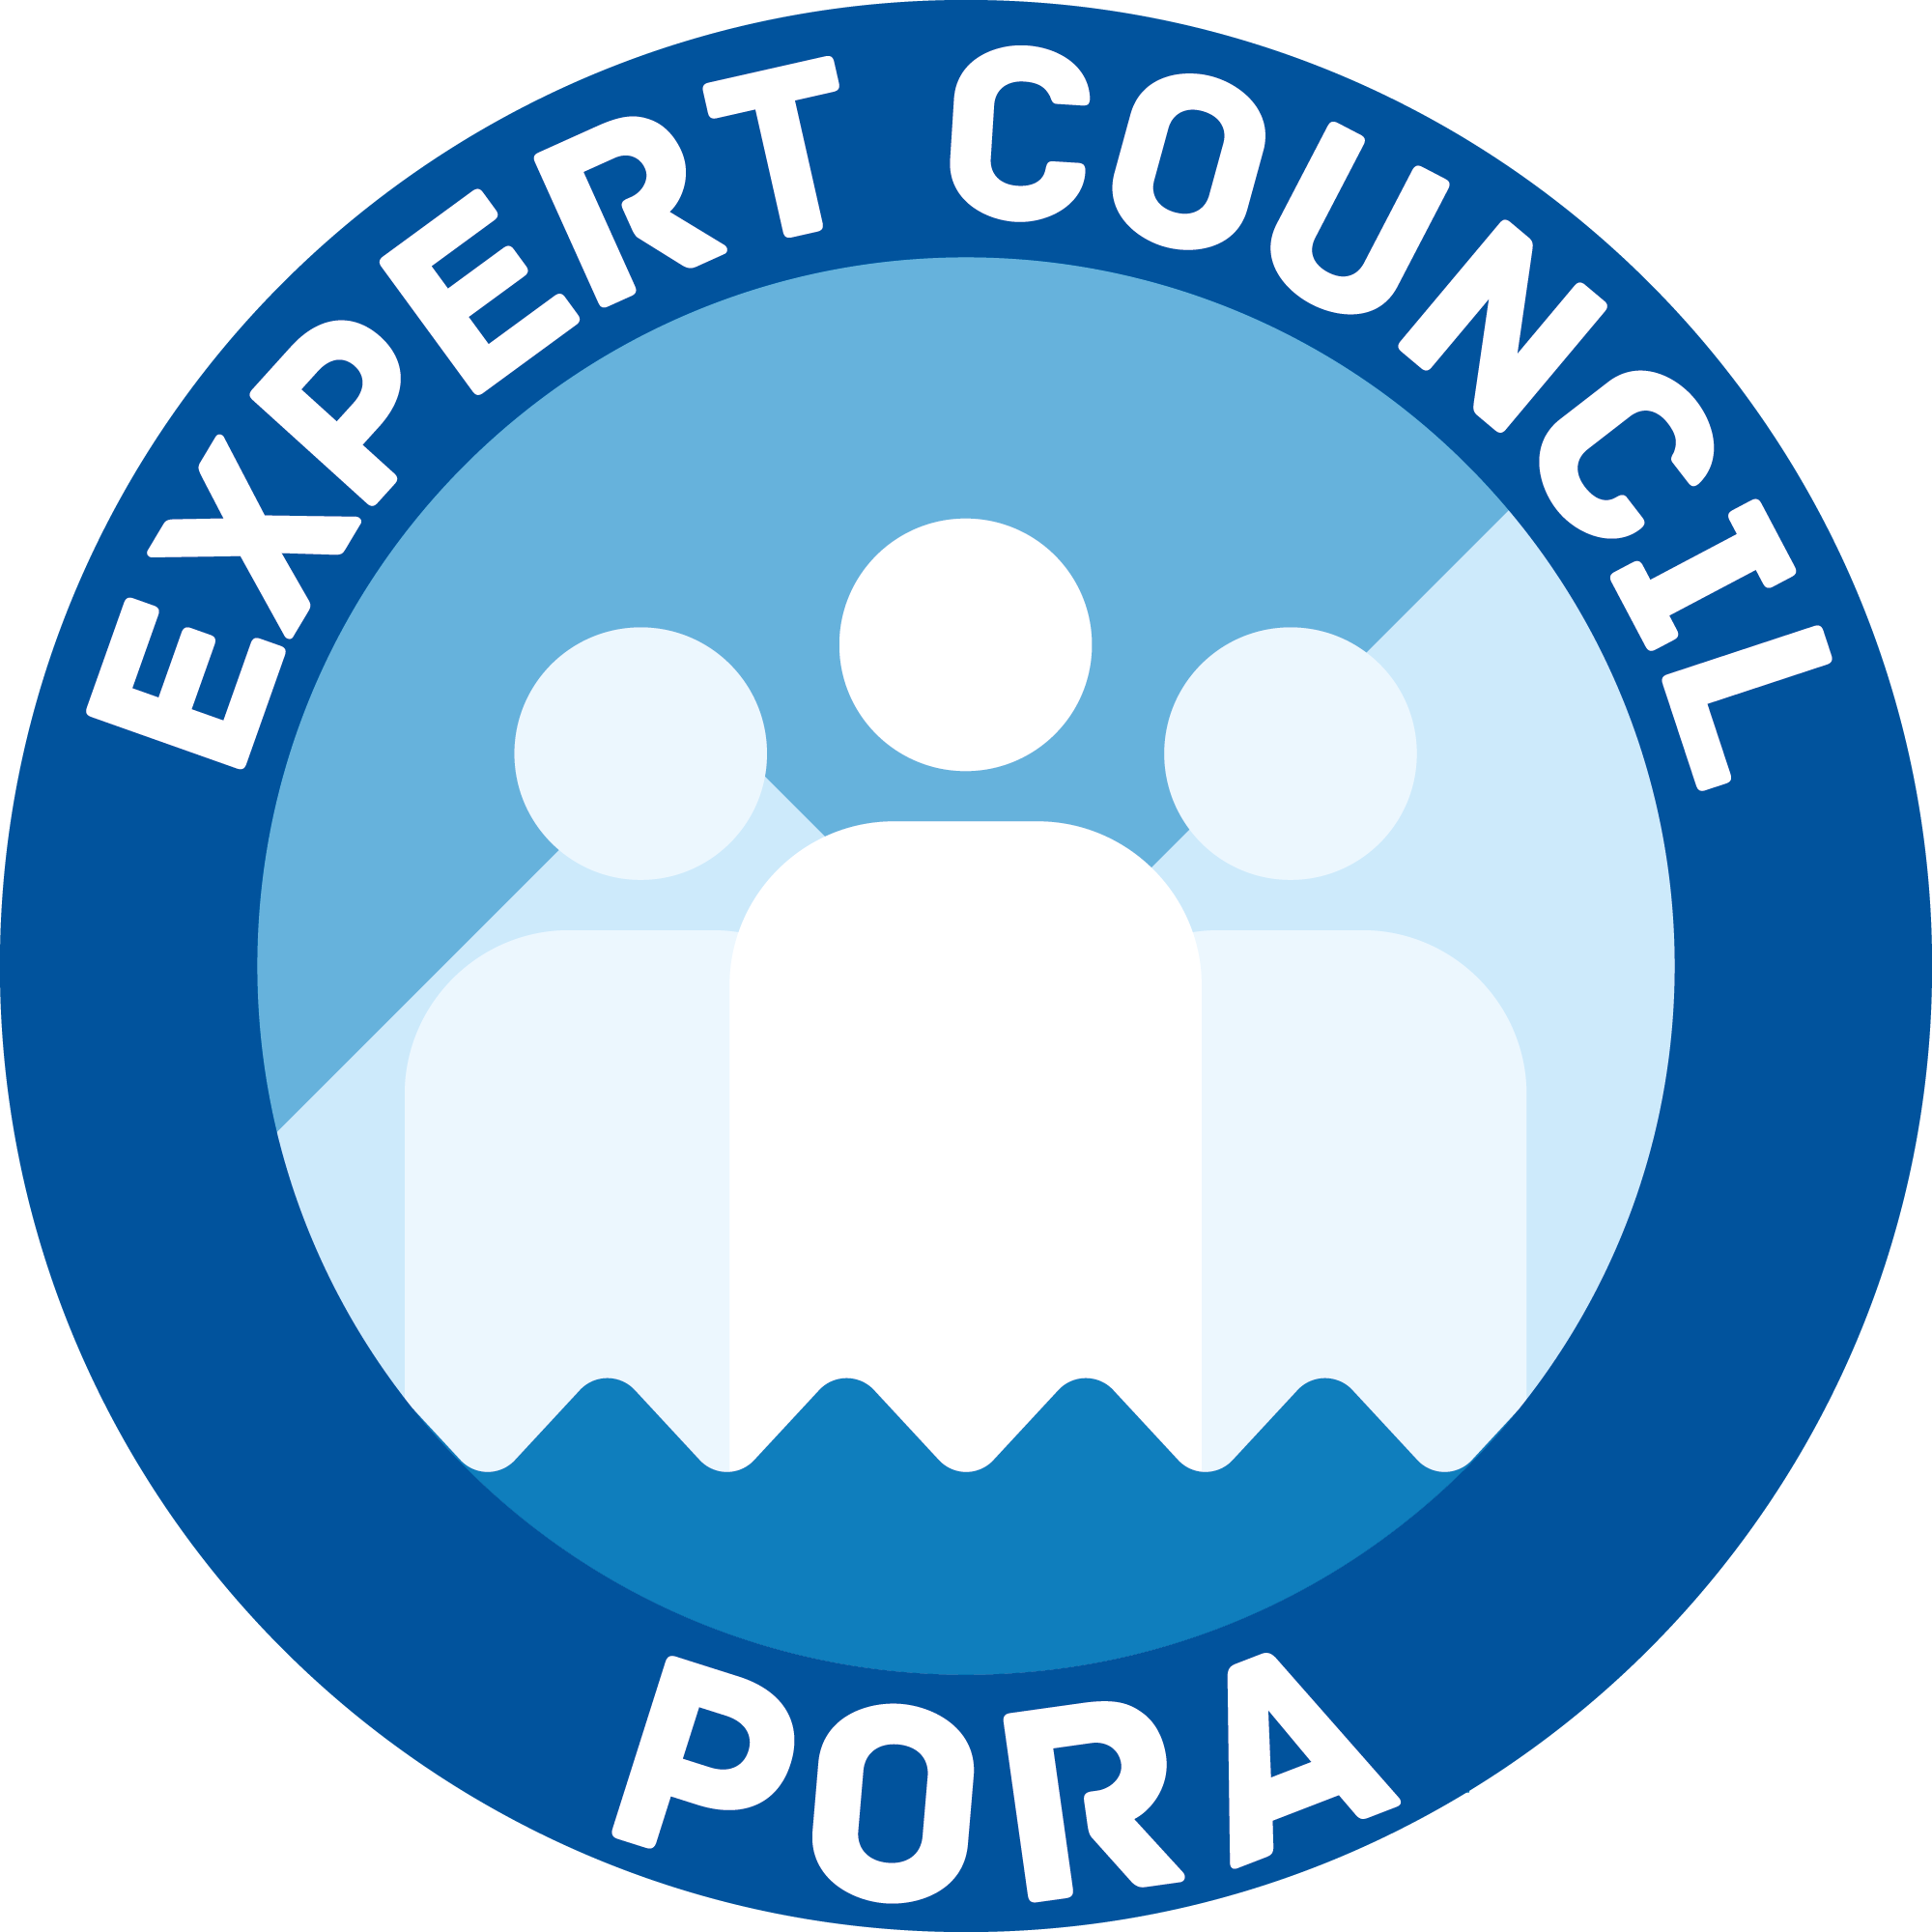 Expert Council